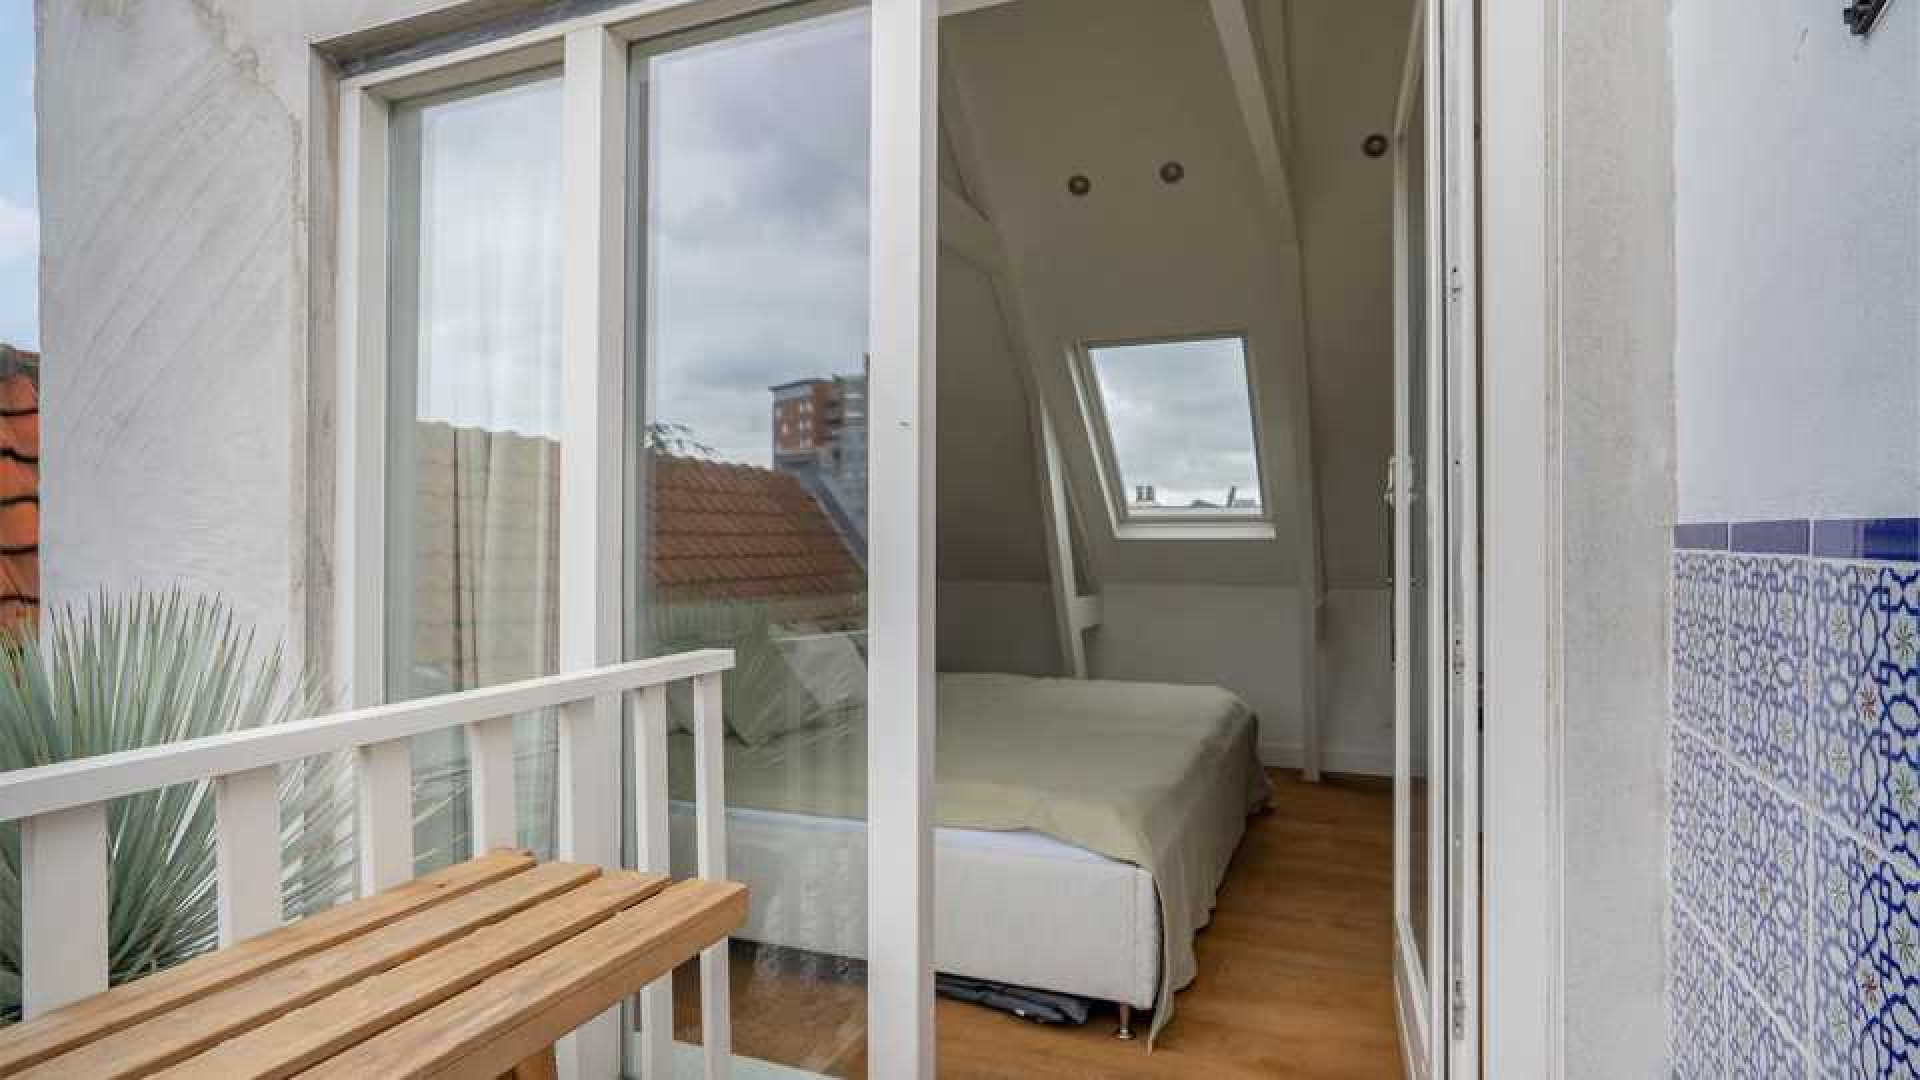 Topvoetballer Matthijs de Ligt koopt zeer luxe appartement in de Amsterdamse Pijp buurt. Zie foto's